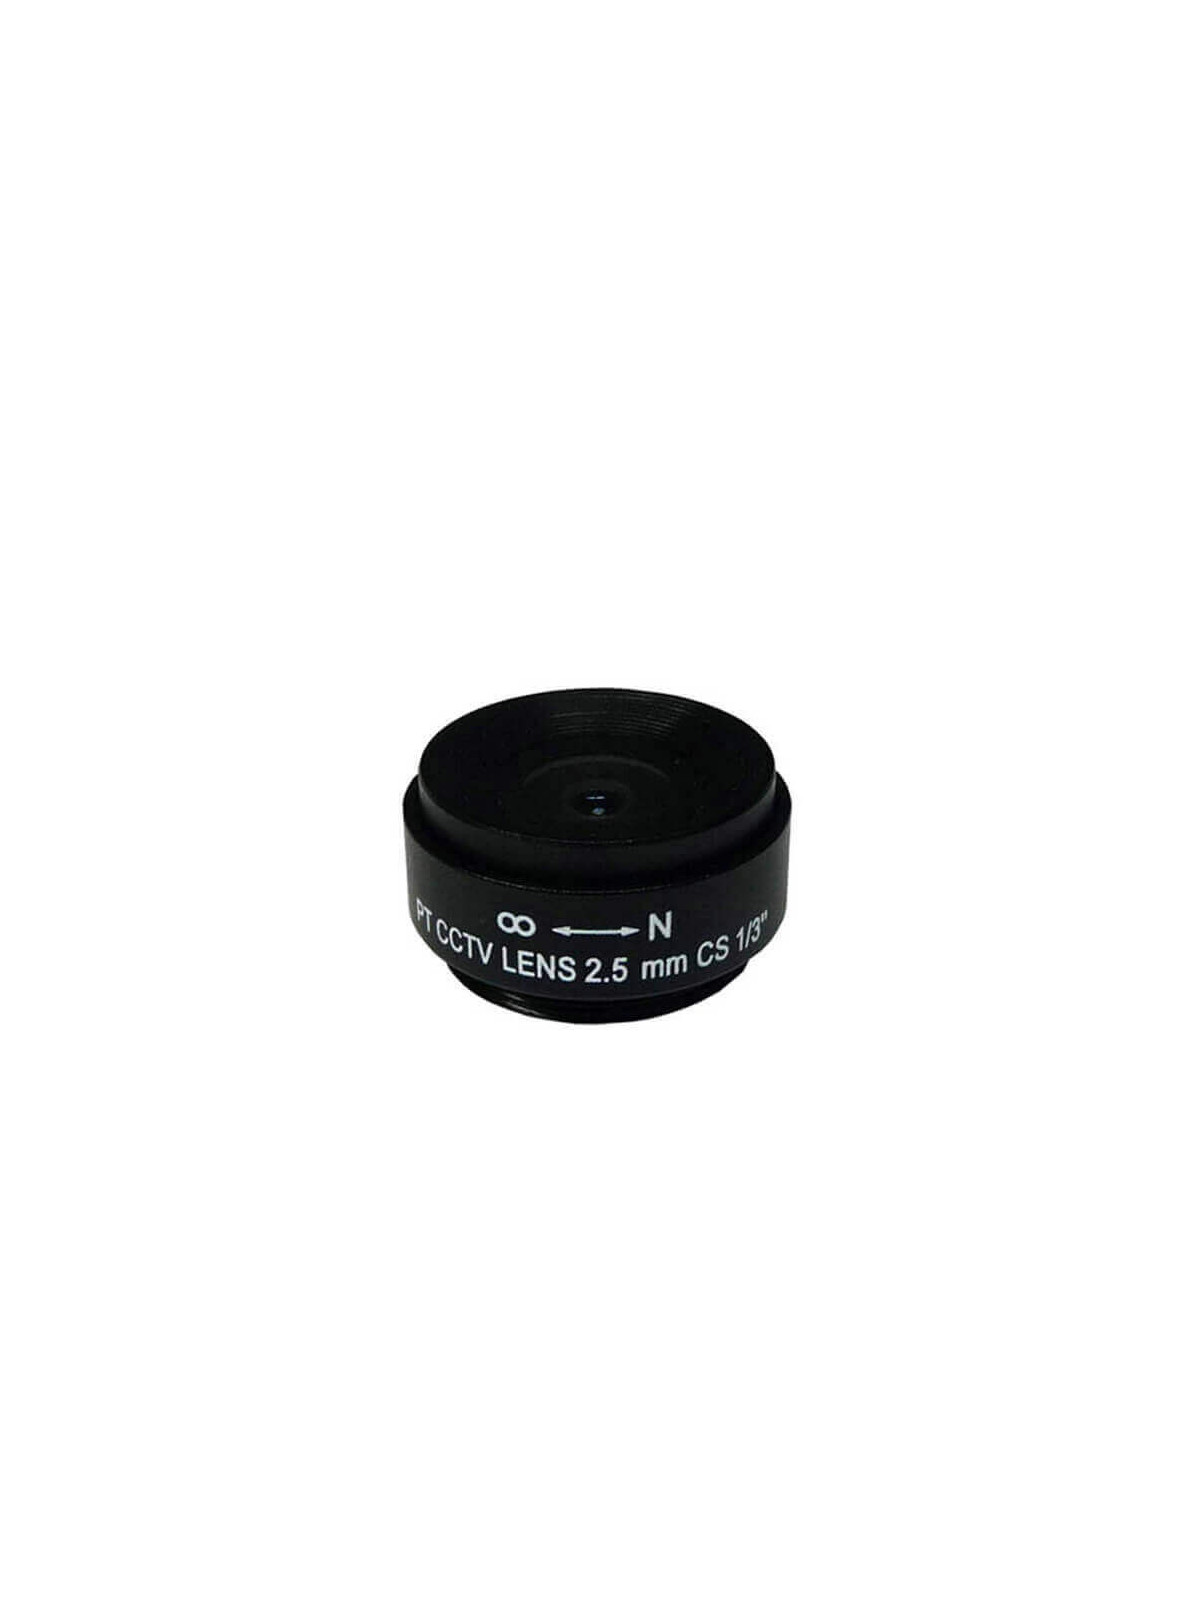 Óptica fija para cámara videovigilancia  2.5mm SSE02512NI